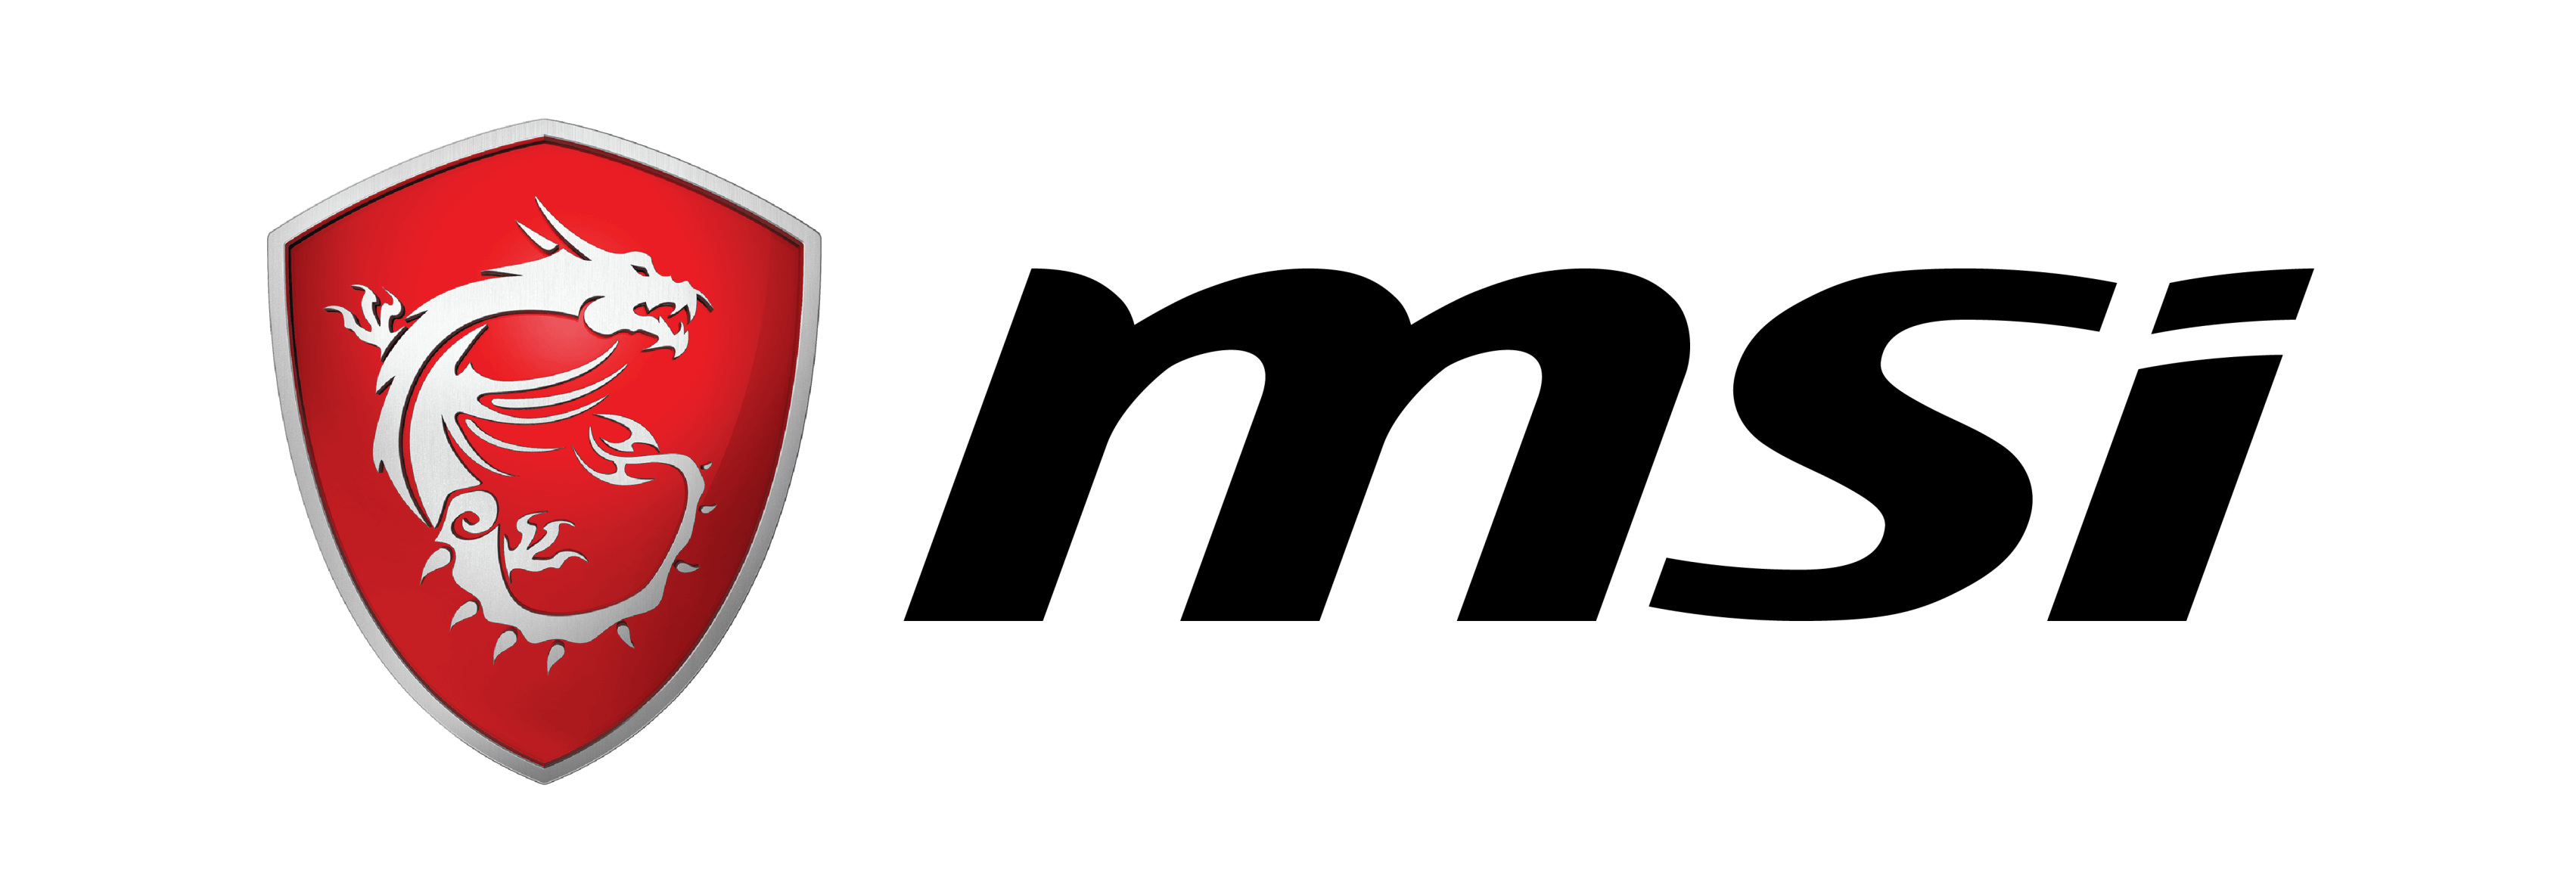 MSI Dragon Spirit logo, logotype